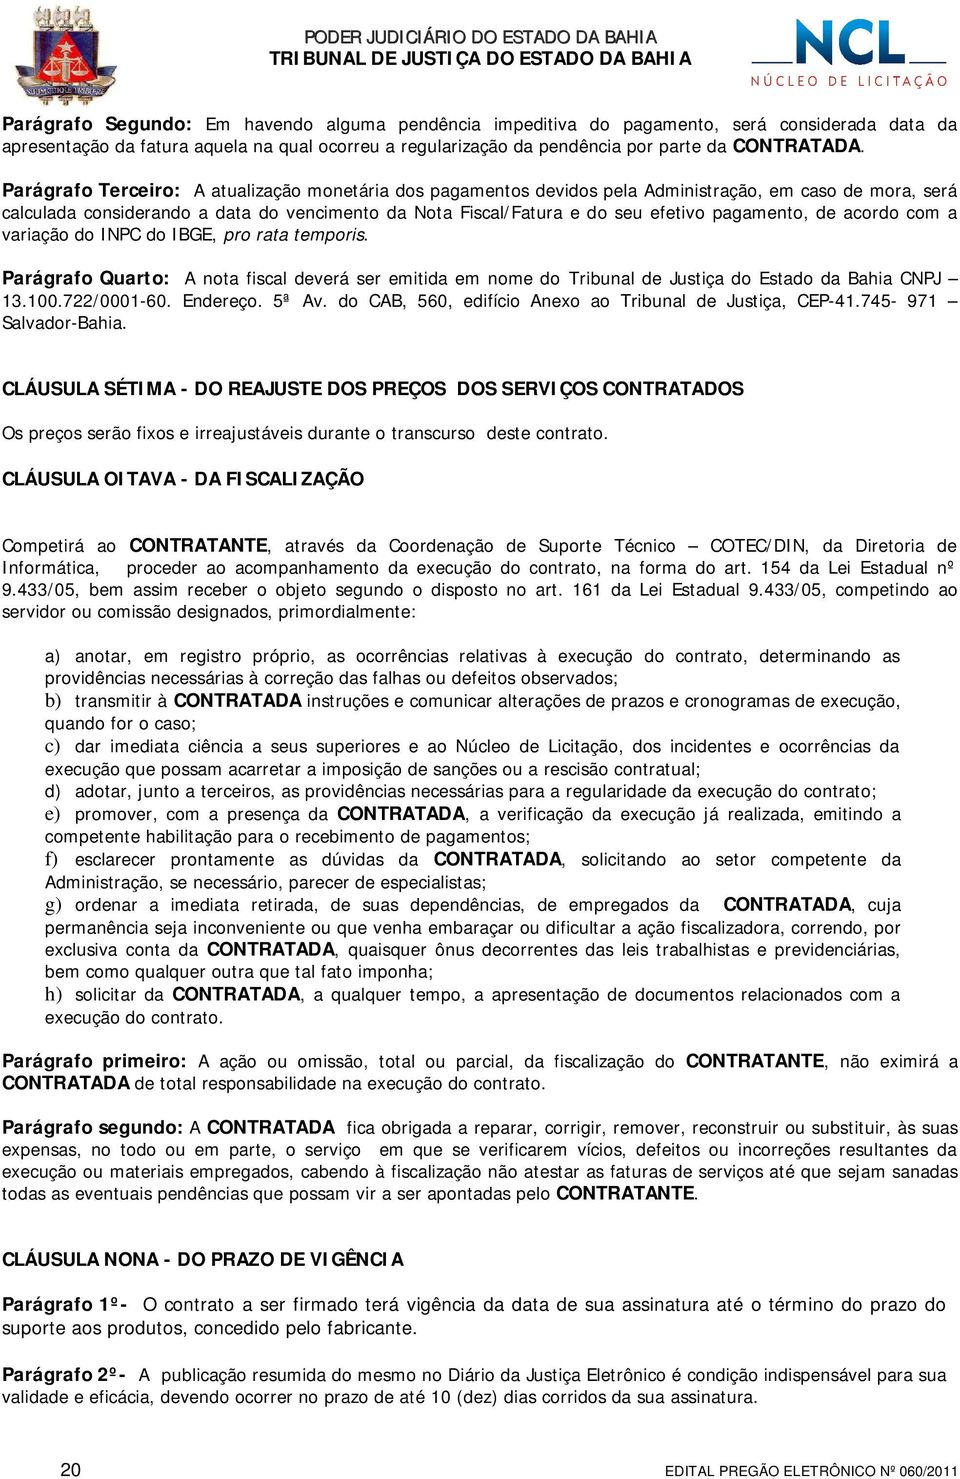 pagamento, de acordo com a variação do INPC do IBGE, pro rata temporis. Parágrafo Quarto: A nota fiscal deverá ser emitida em nome do Tribunal de Justiça do Estado da Bahia CNPJ 13.100.722/0001-60.